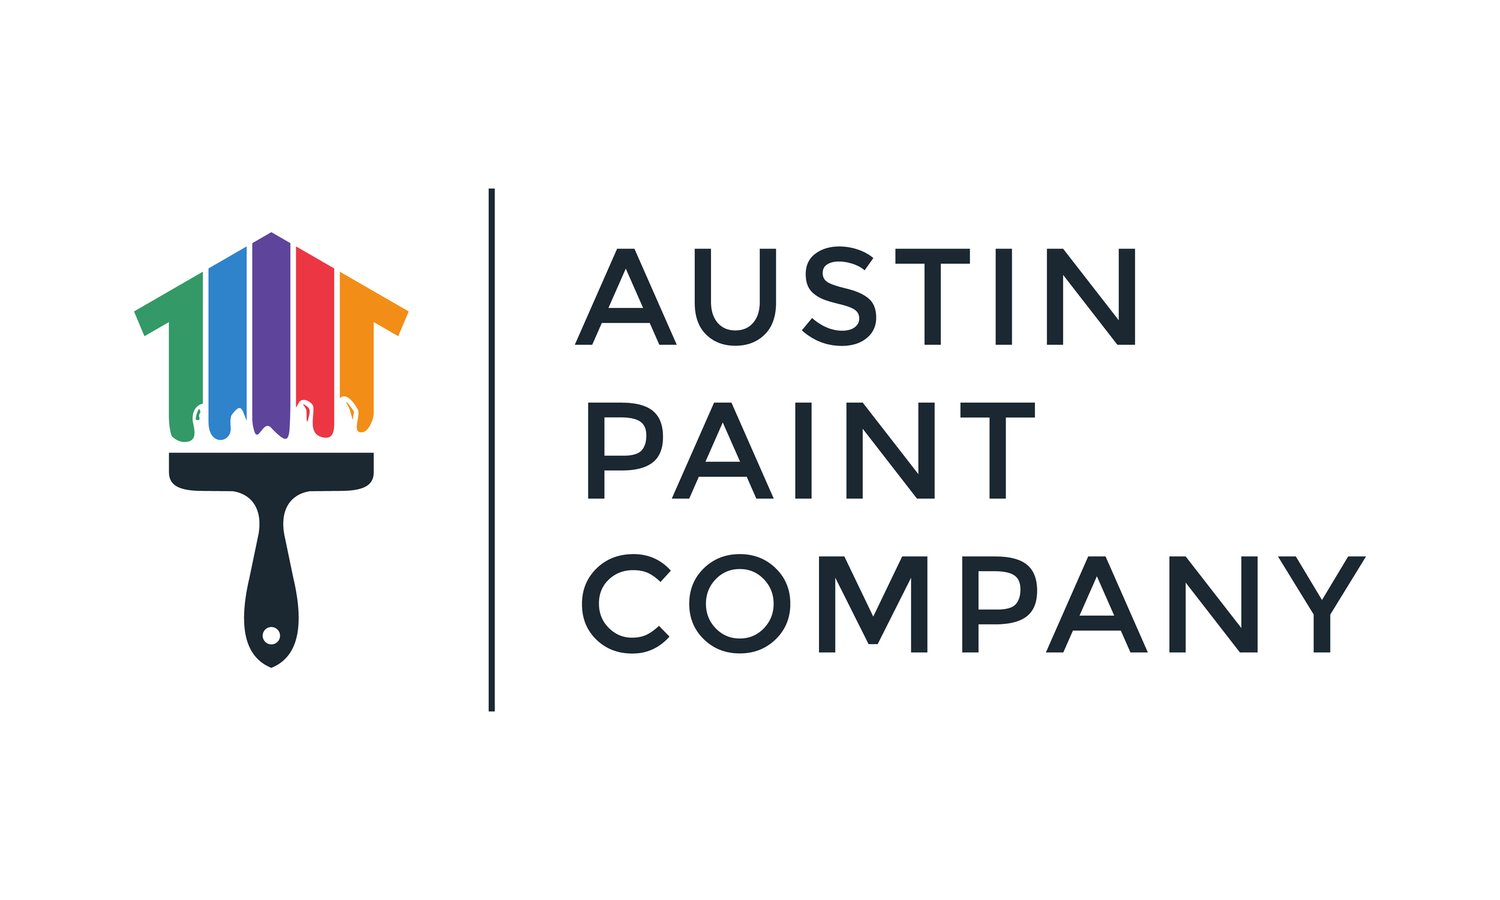 The Austin Paint Company - Quality Austin Painters